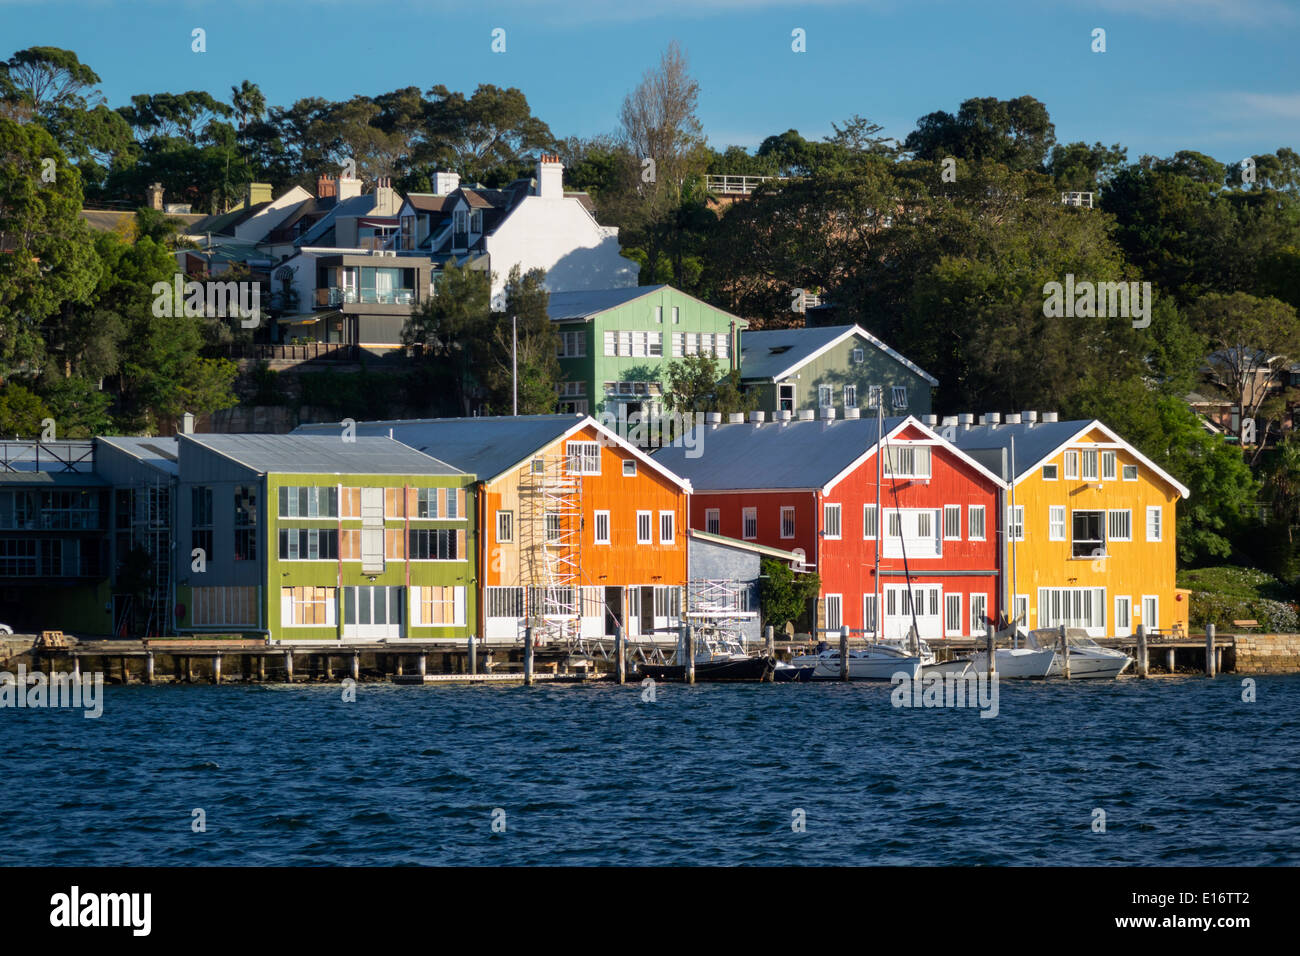 Sydney Australien, Hafen, Hafen, Wasser, East Balmain, Waterfront, Häuser, Häuser, AU140311175 Stockfoto